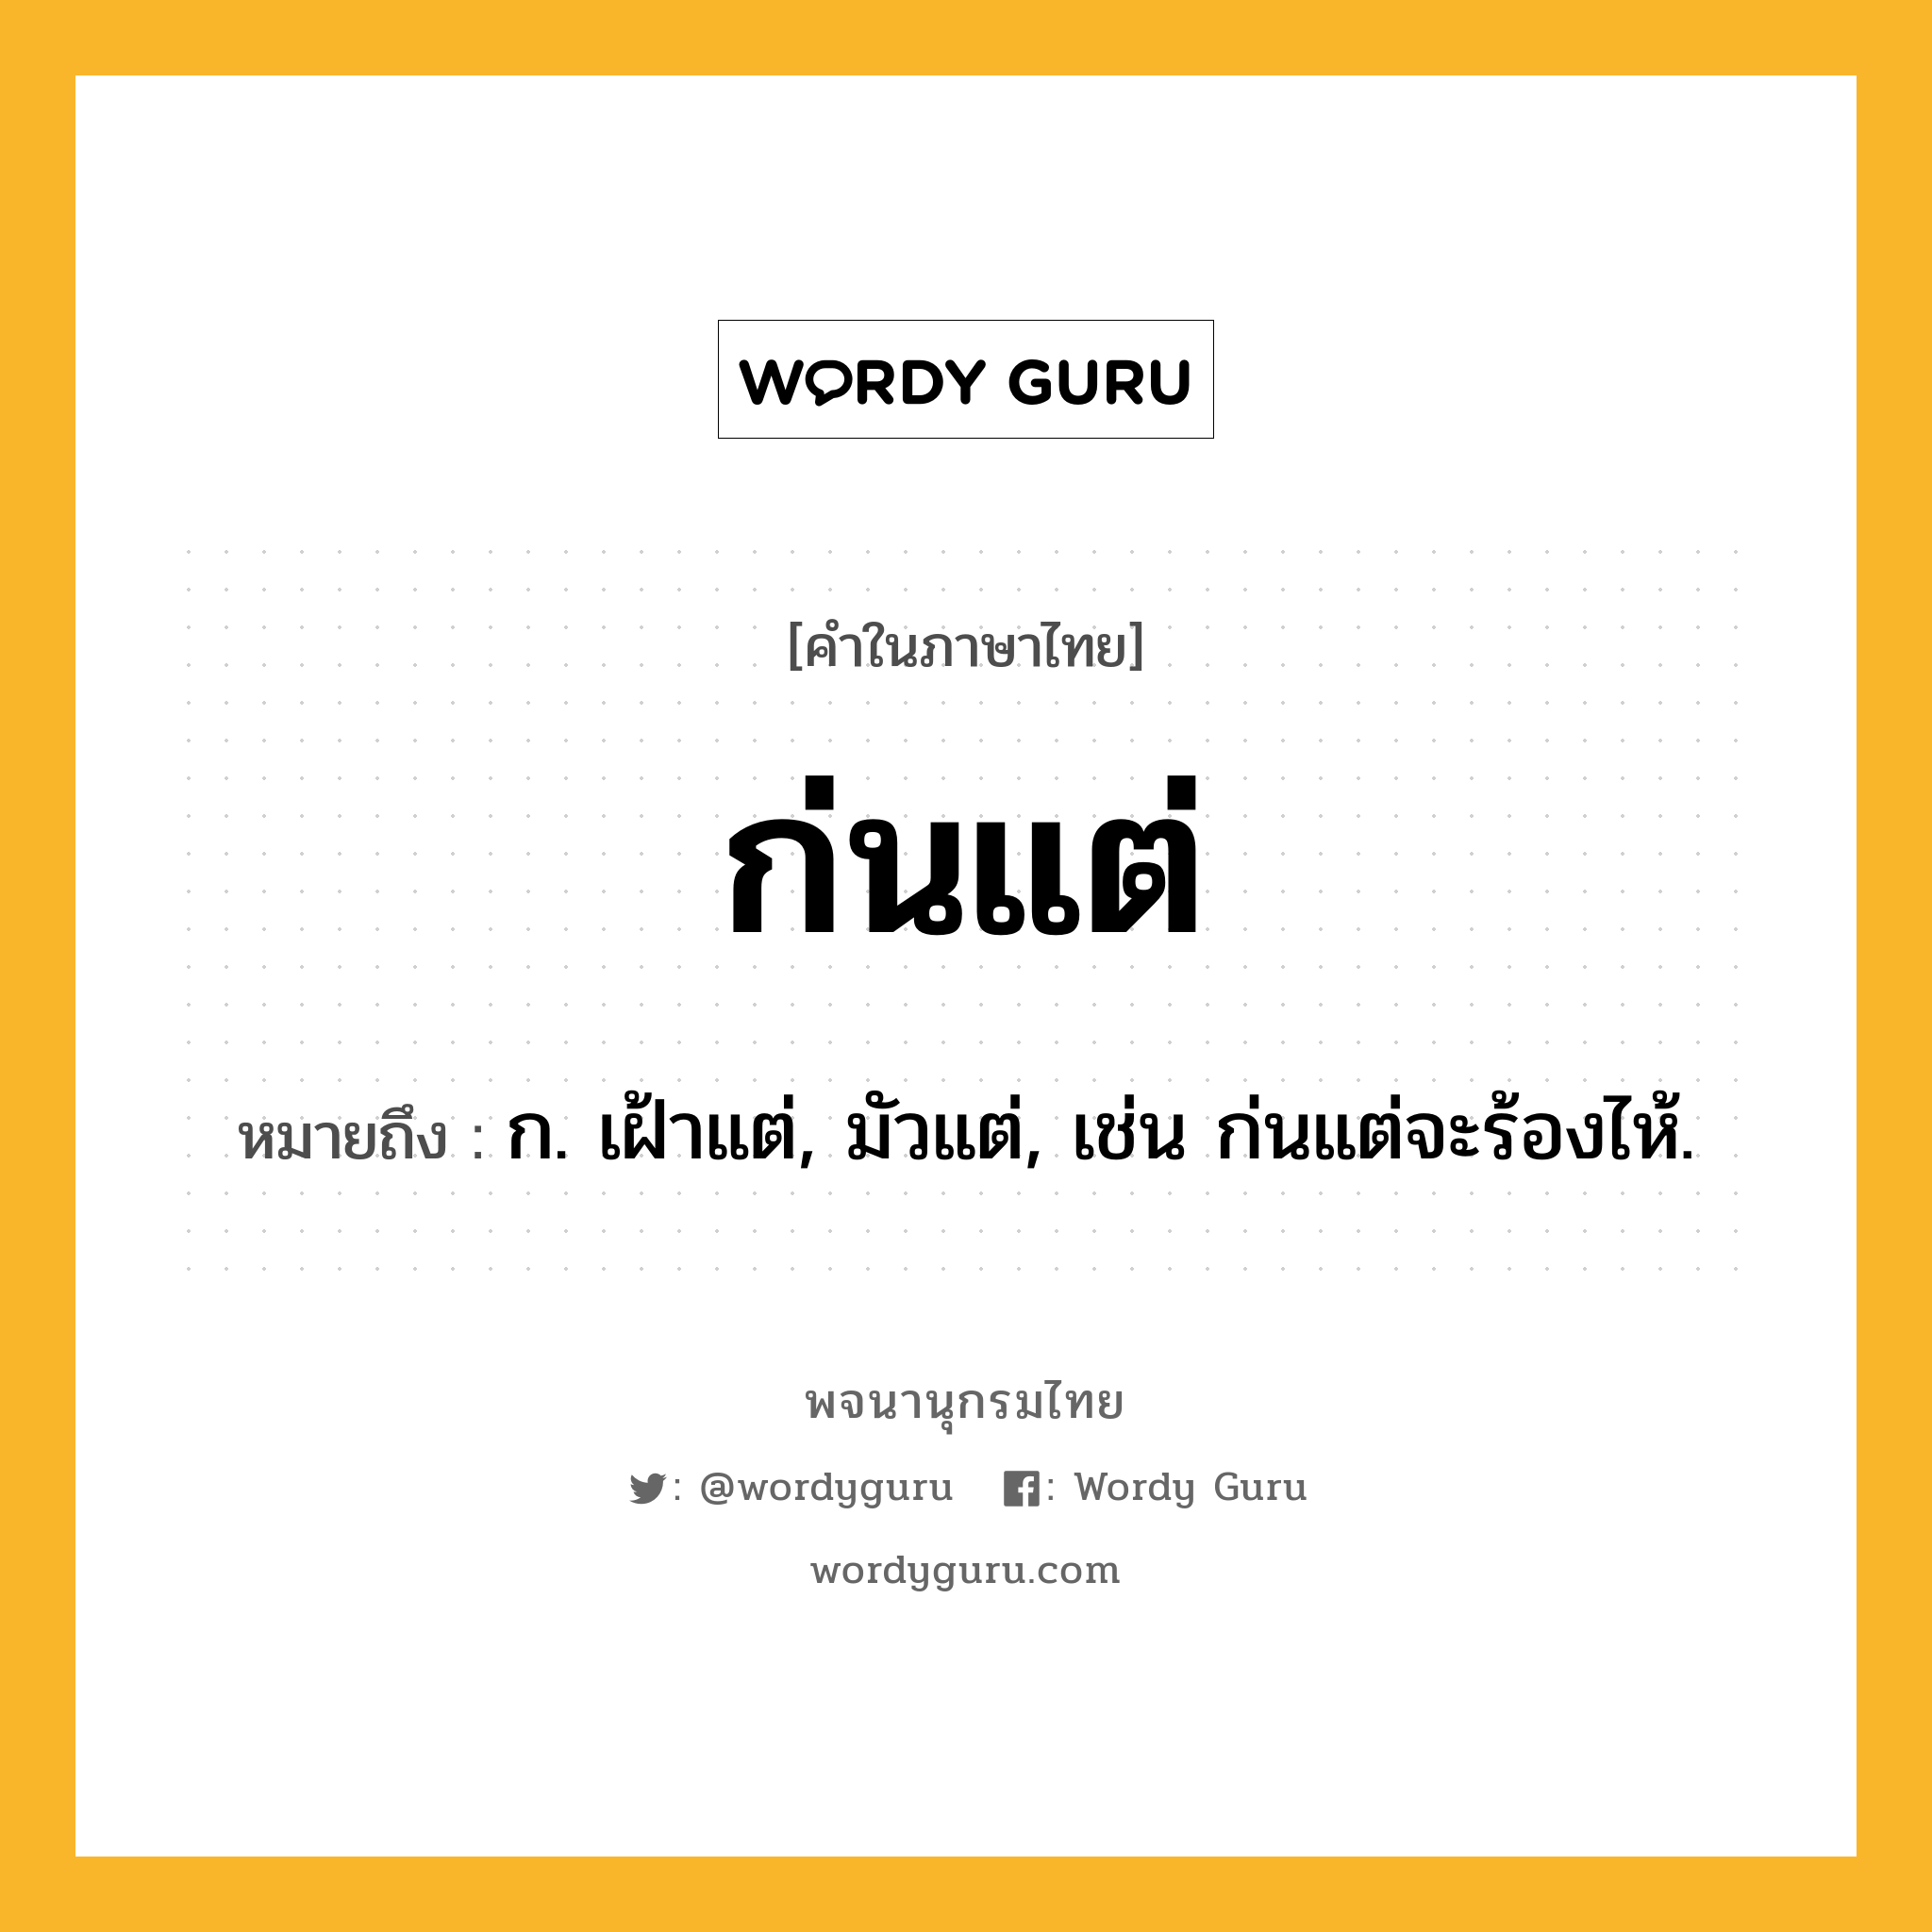 ก่นแต่ หมายถึงอะไร?, คำในภาษาไทย ก่นแต่ หมายถึง ก. เฝ้าแต่, มัวแต่, เช่น ก่นแต่จะร้องไห้.